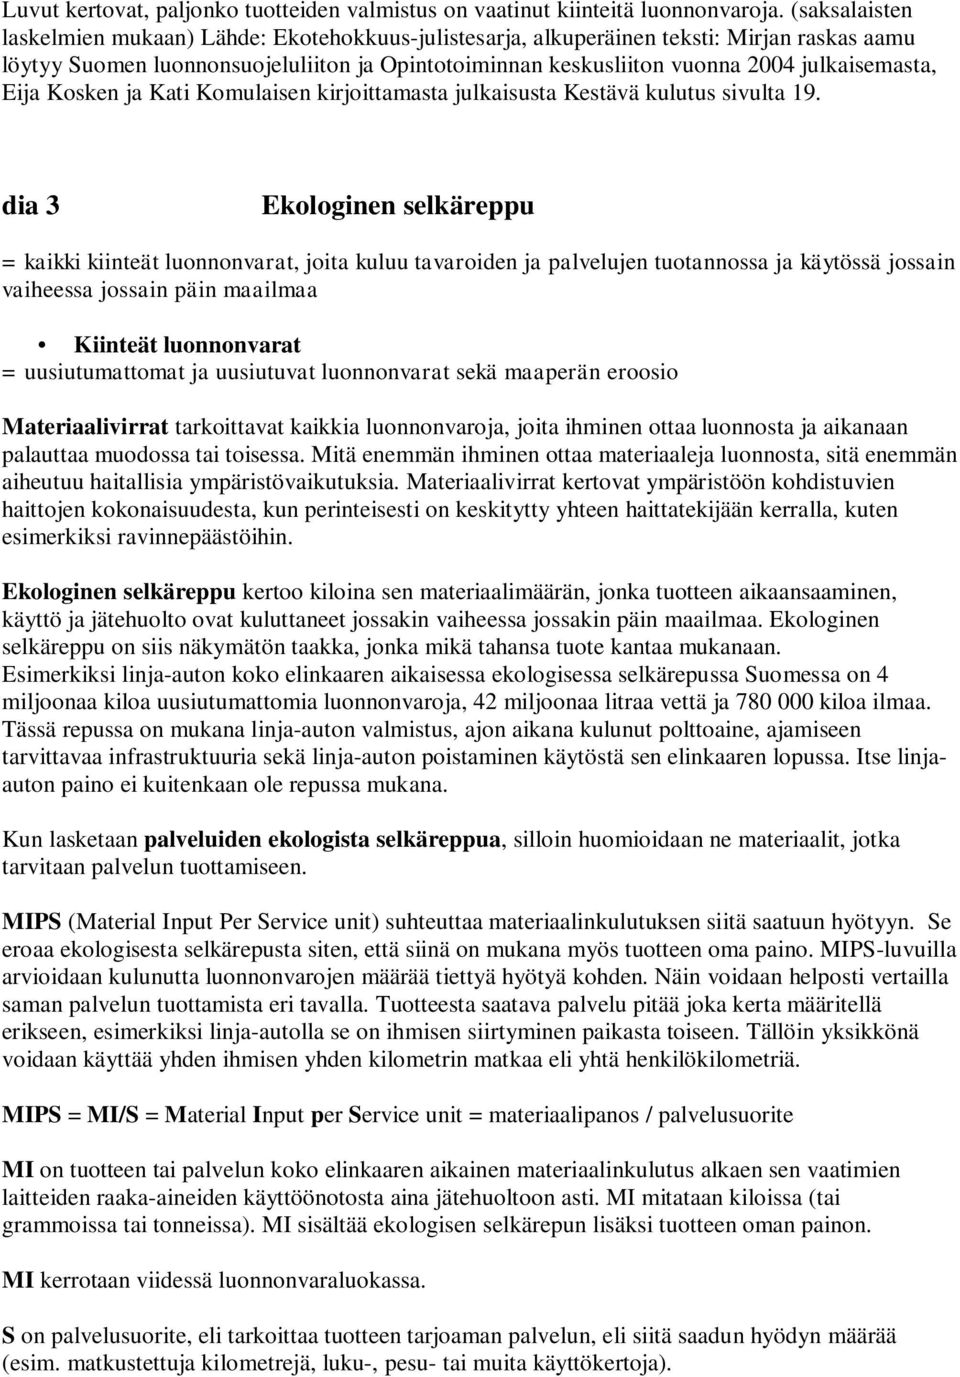 julkaisemasta, Eija Kosken ja Kati Komulaisen kirjoittamasta julkaisusta Kestävä kulutus sivulta 19.